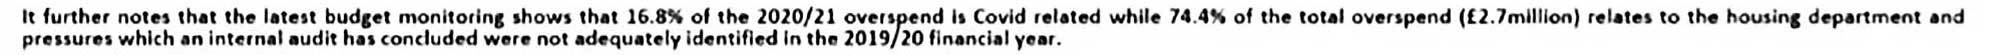 Covid debt